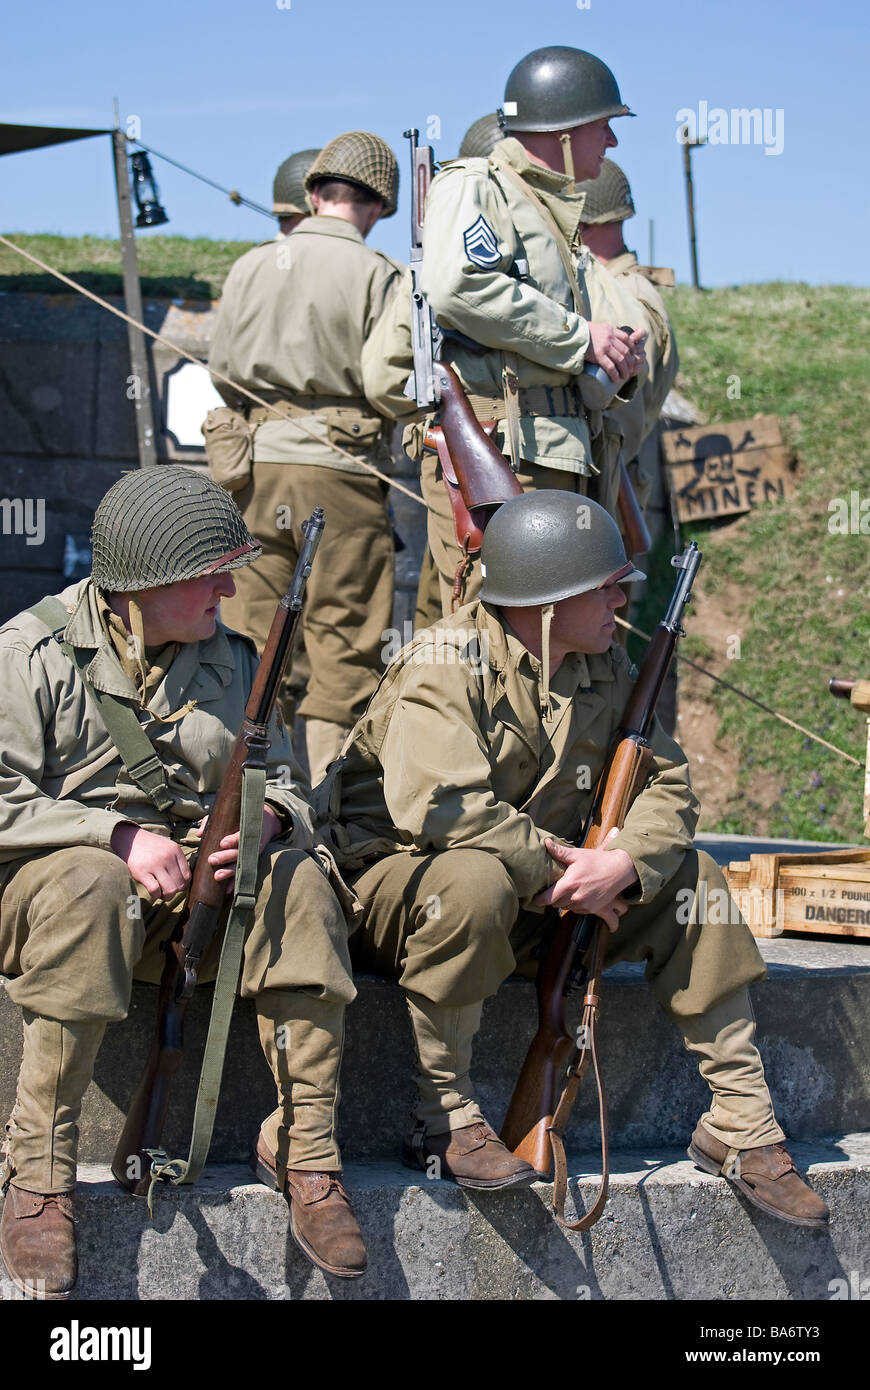 Groupe de WW2 soldats américains avec des fusils. Banque D'Images